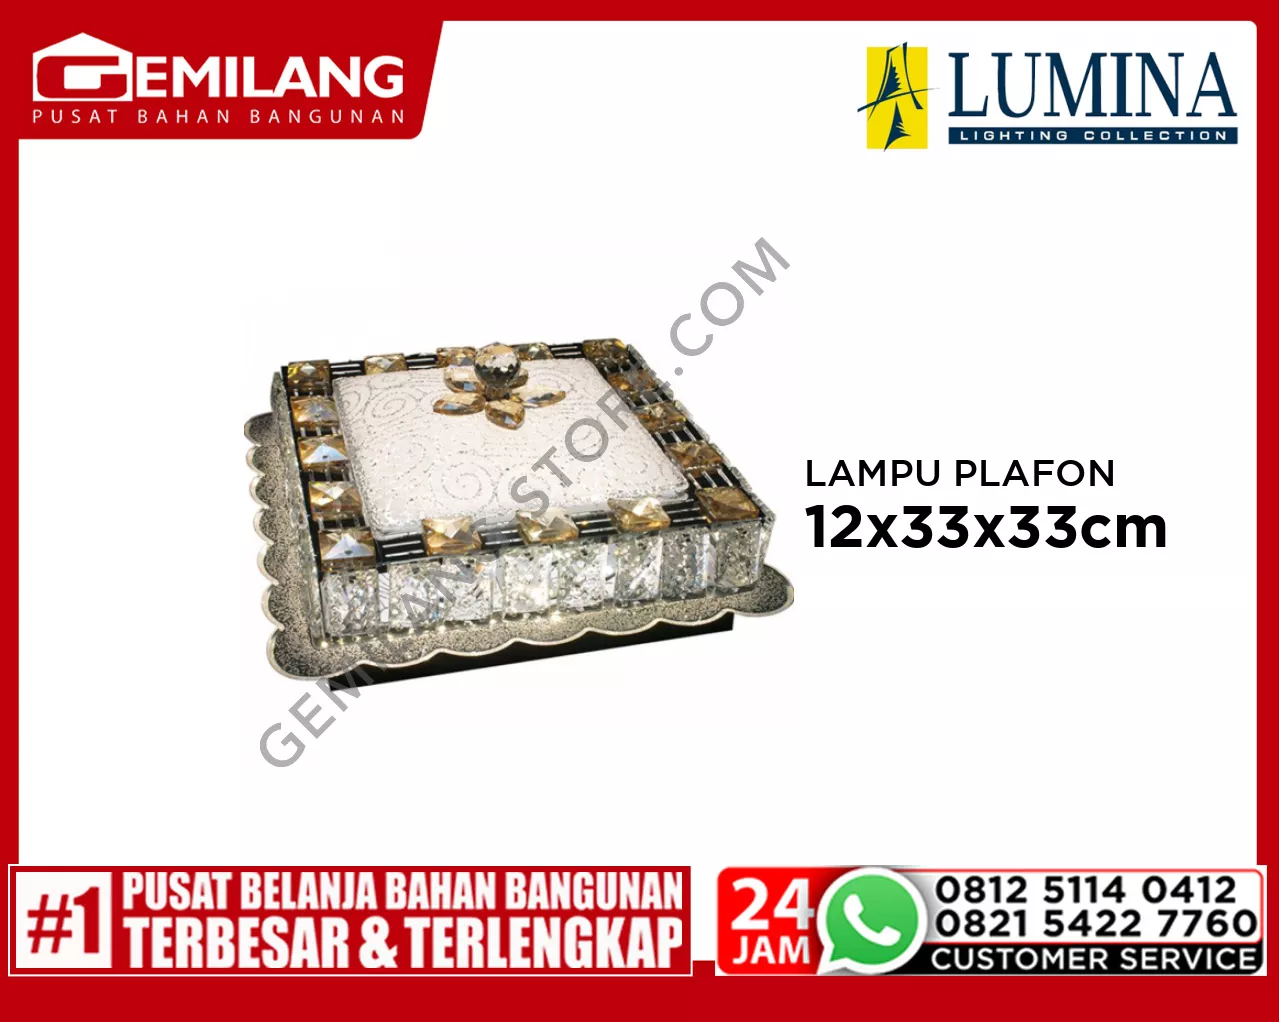 LAMPU PLAFON H 80288-300 x 300 A